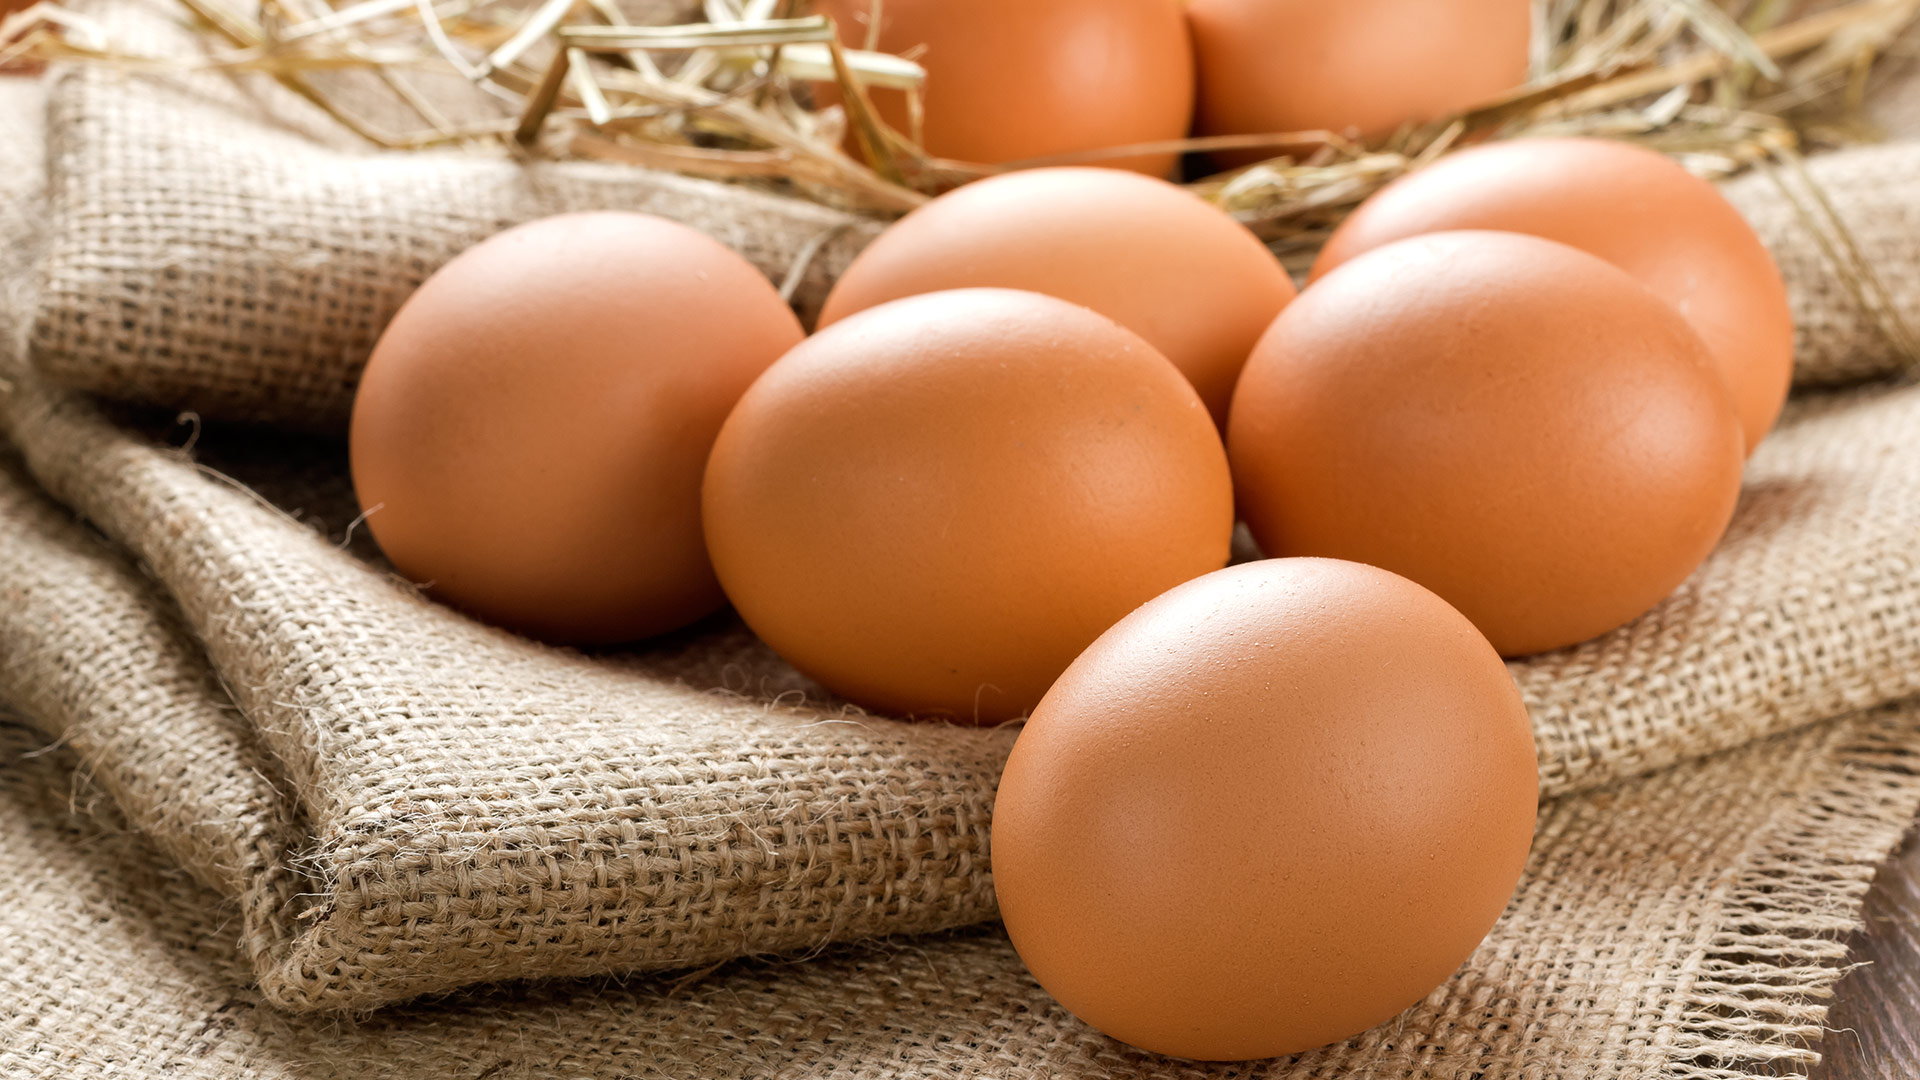 Benefícios do ovo: o que torna este alimento tão especial?